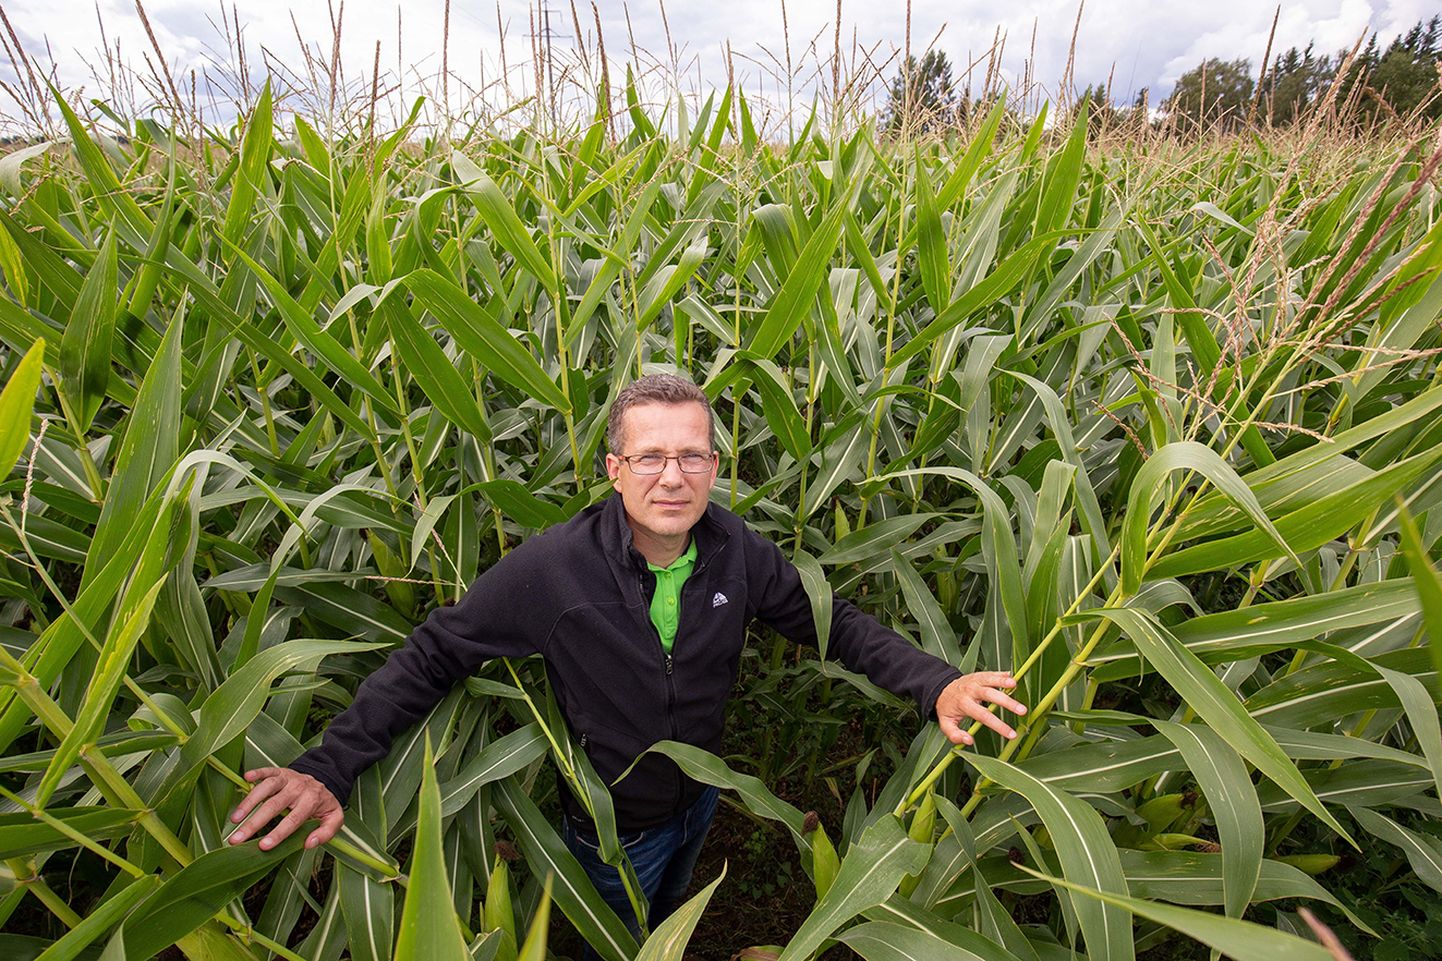 Väätsa Agro AS on Väätsa piirkonnas põllumaid kokku ostnud, nii ka selle maisipõllu, kus seisab ettevõtte juhatuse liige Margus Muld. Rentimisest püüab ettevõte pigem hoiduda ja eelistab maad täielikult enda käsutusse saada.